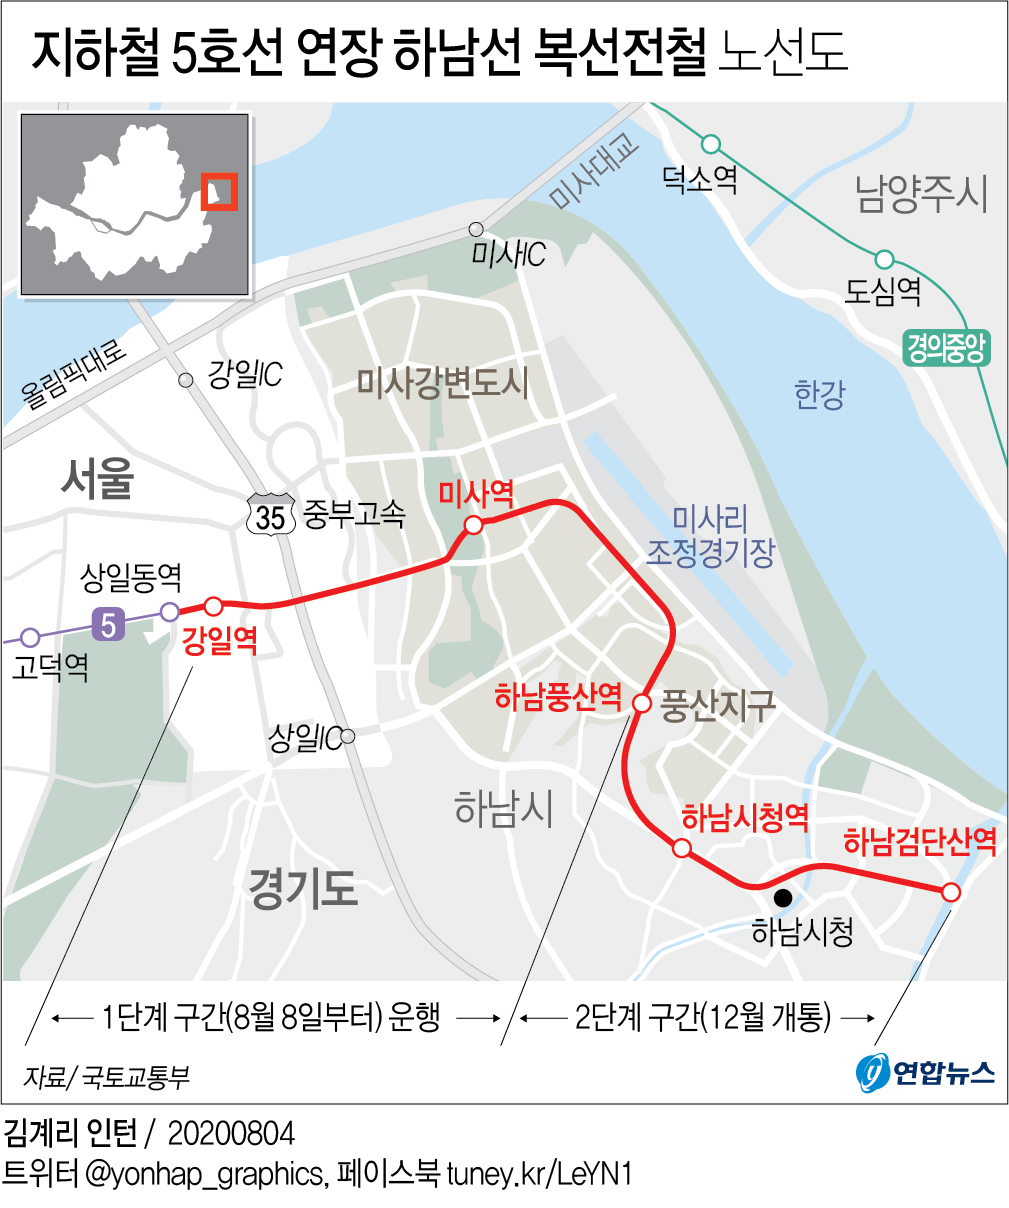 [그래픽] 지하철 5호선 연장 하남선 복선전철 노선도